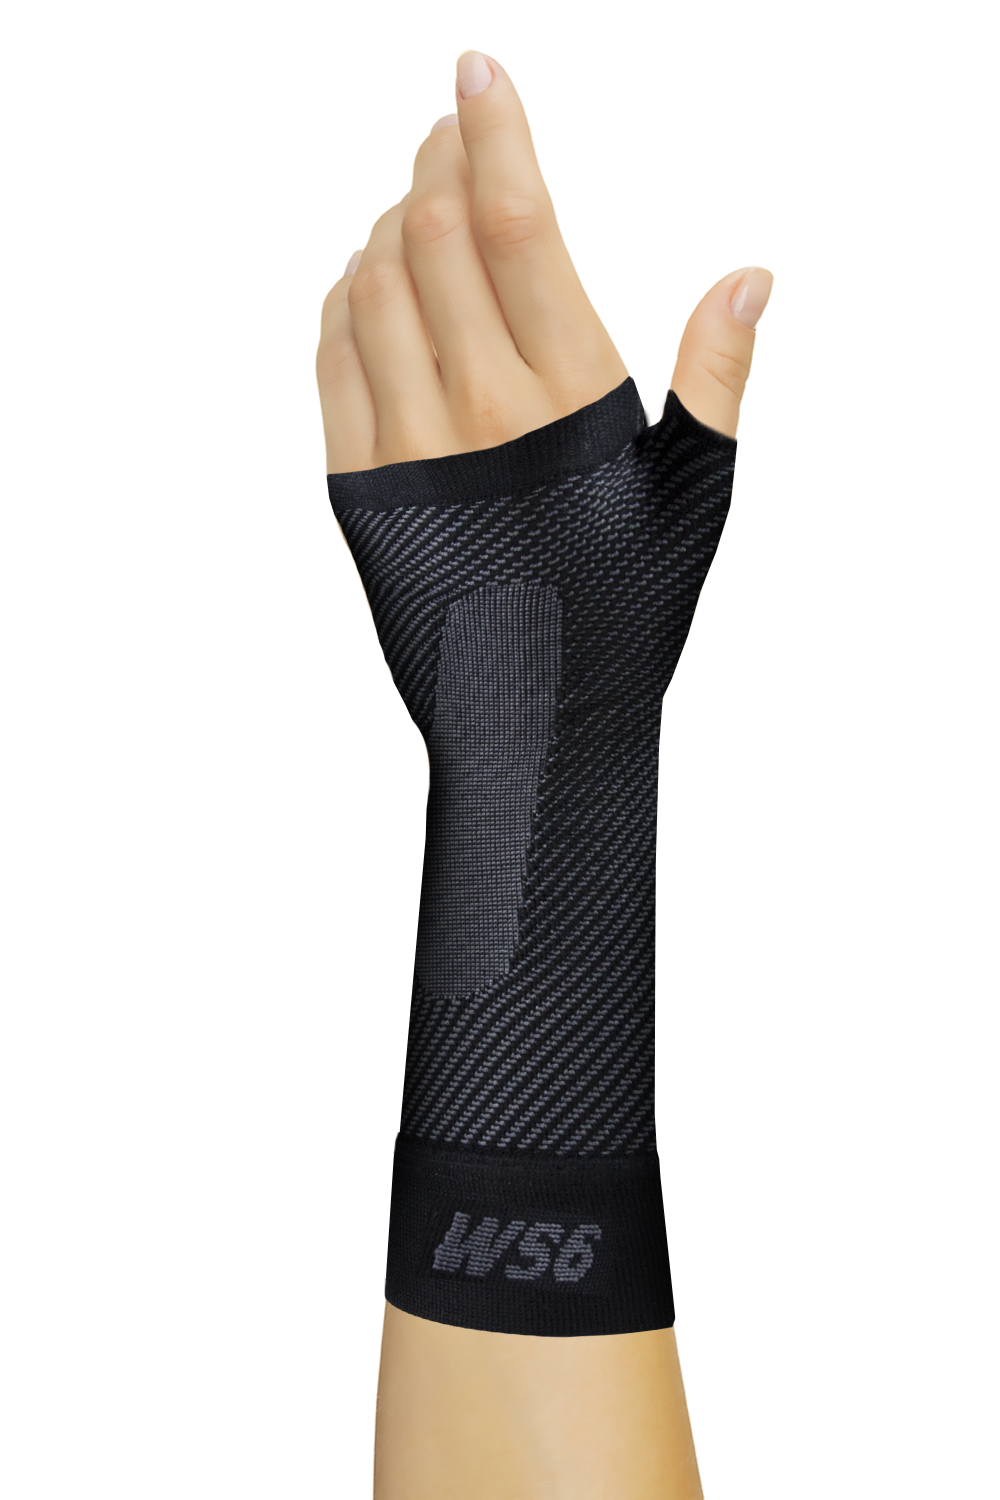 Orthosleeve Ws6 Wrist Sleeve Black Medium